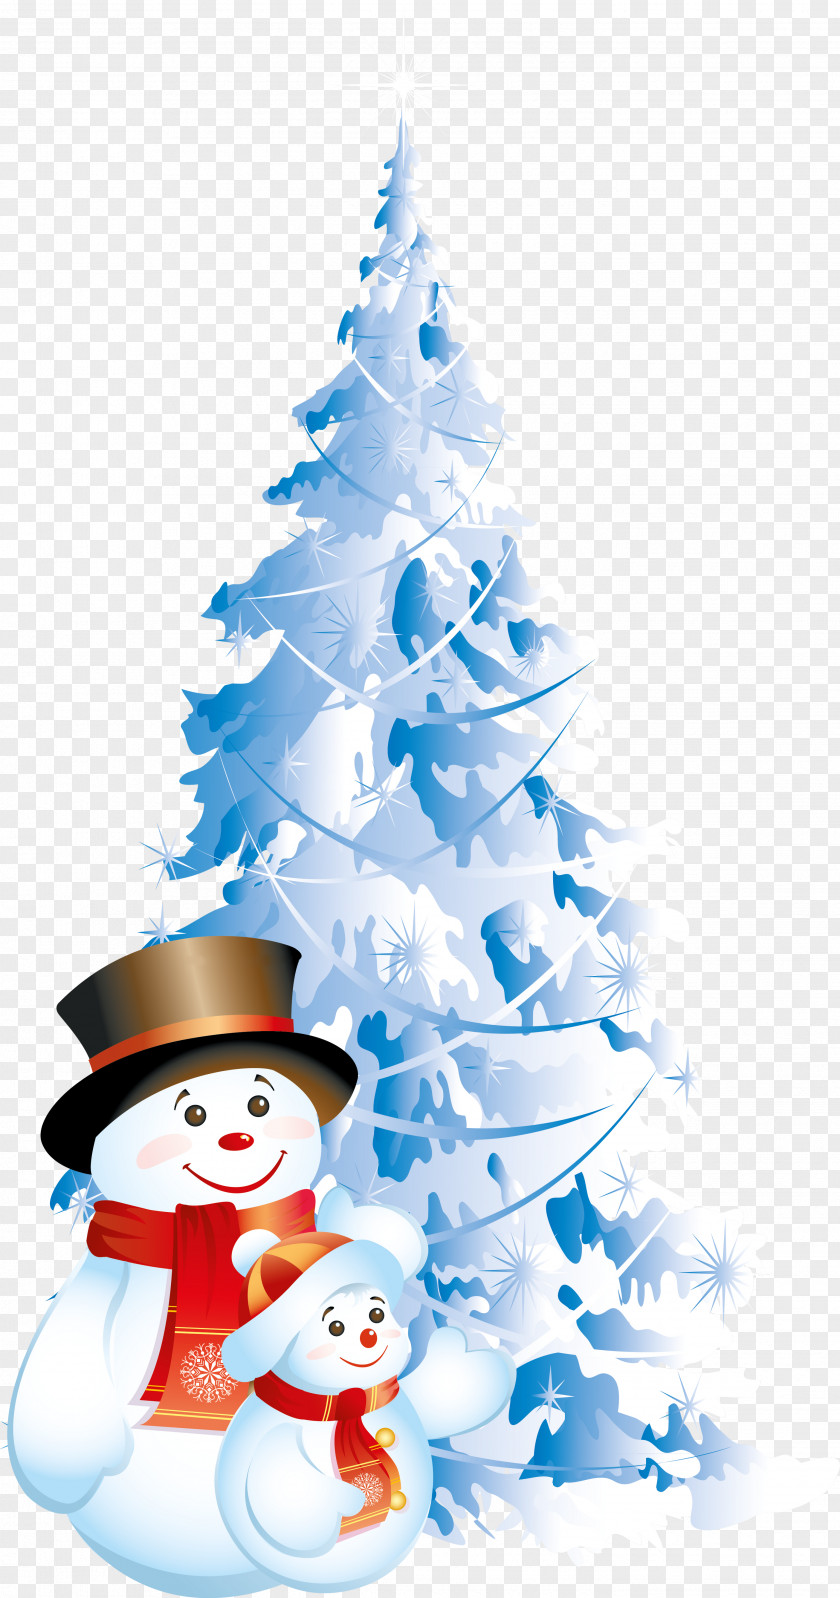 Snowman Christmas Desktop Wallpaper Clip Art PNG